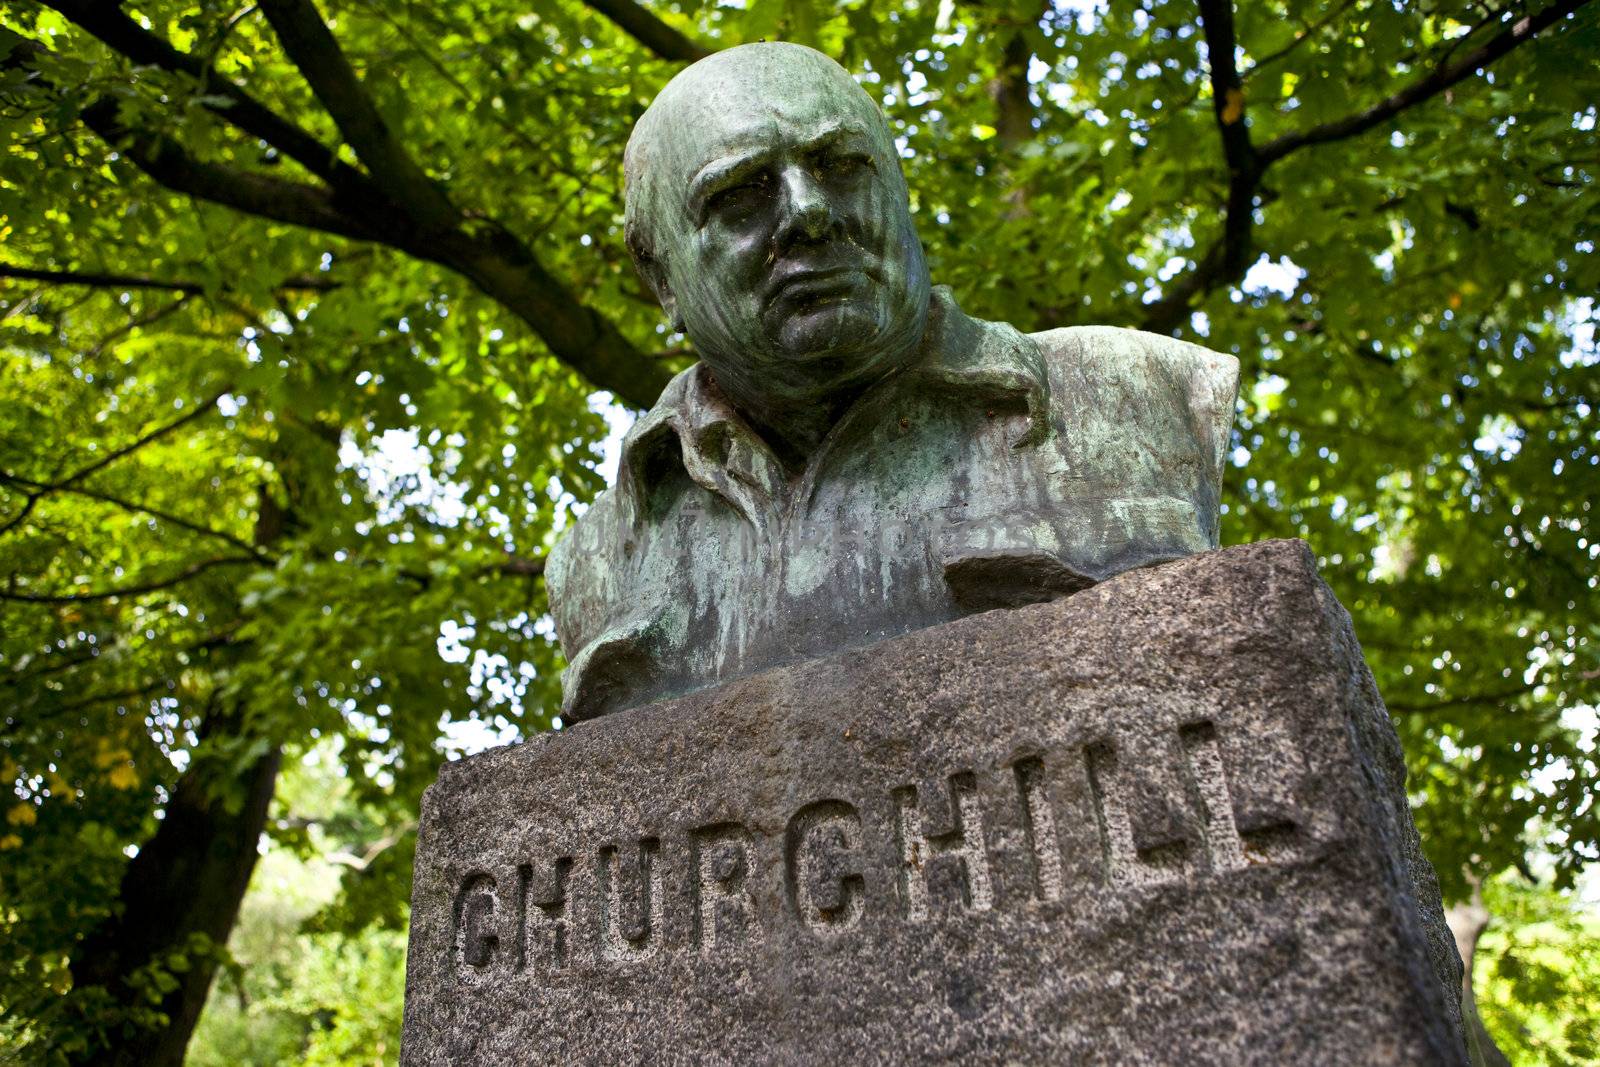 Winston Churchill Statue/Monument in Copenhagen, Denmark.